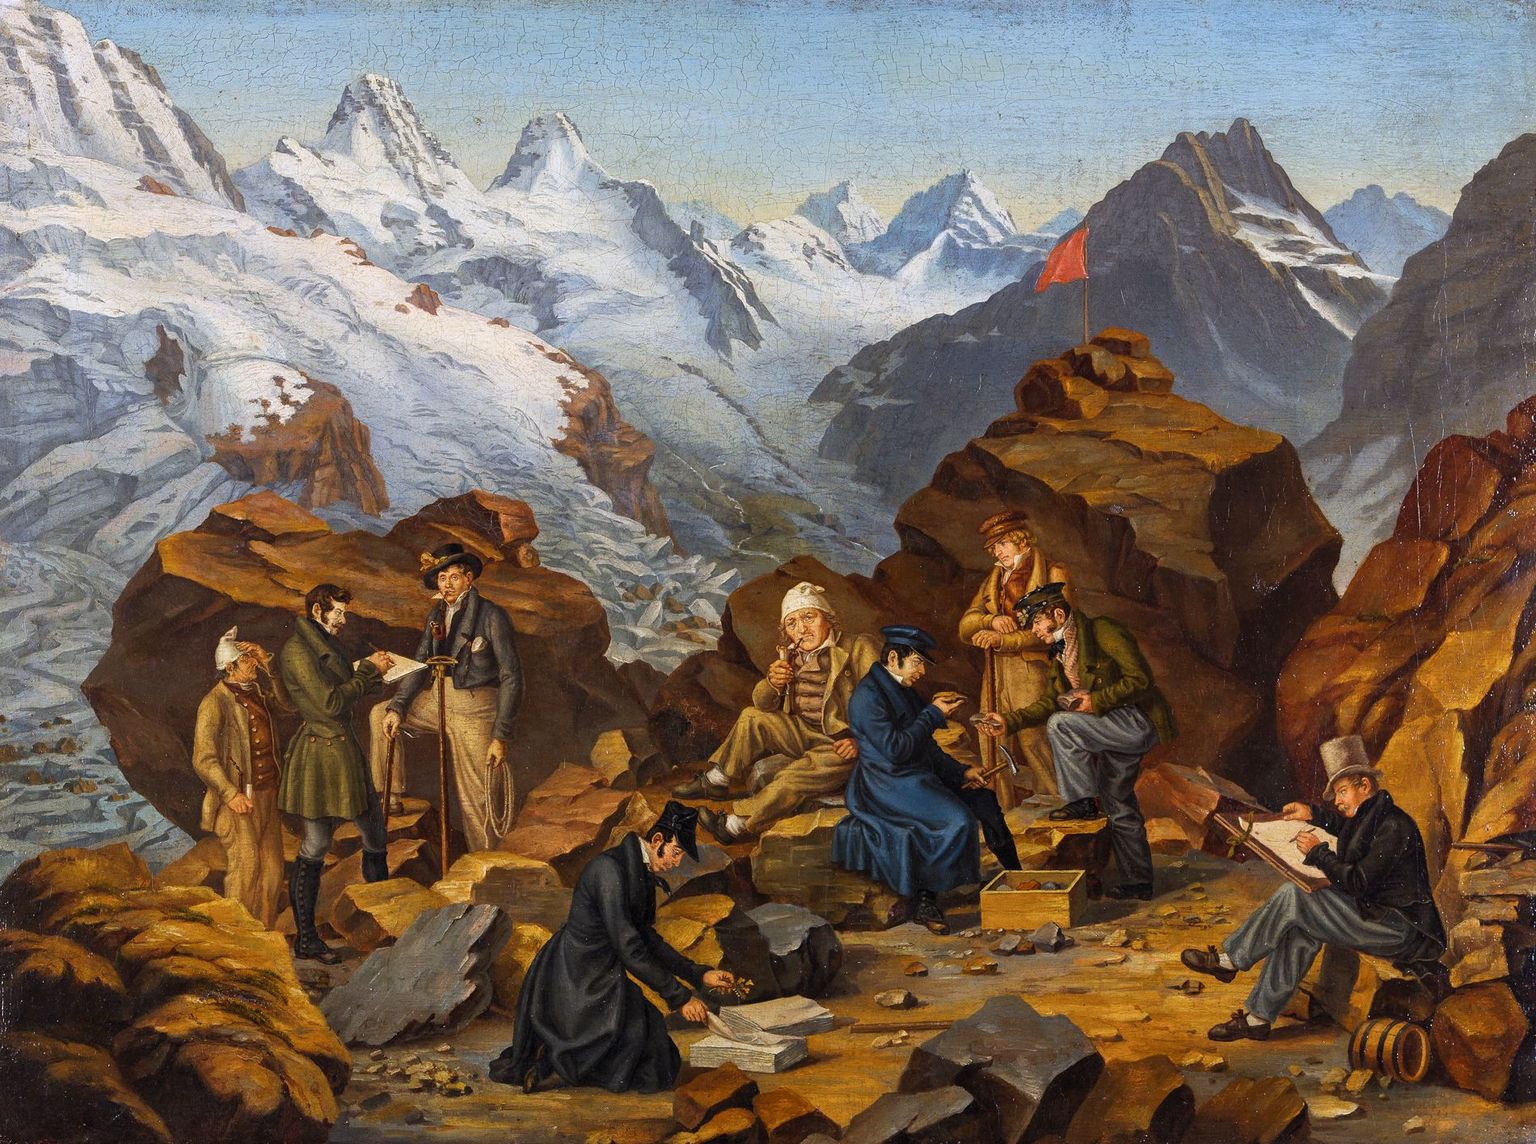 Franz Josef Hugi, Gründer der Naturforschenden Gesellschaft des Kantons Solothurn, erlangte als Pionier bei der Erforschung alpiner Gletscherregionen Berühmtheit. Auf dem Bild Hugi (vierter von rechts) und seine Begleiter im Rottal BE. Gemälde von Martin Disteli, 1830